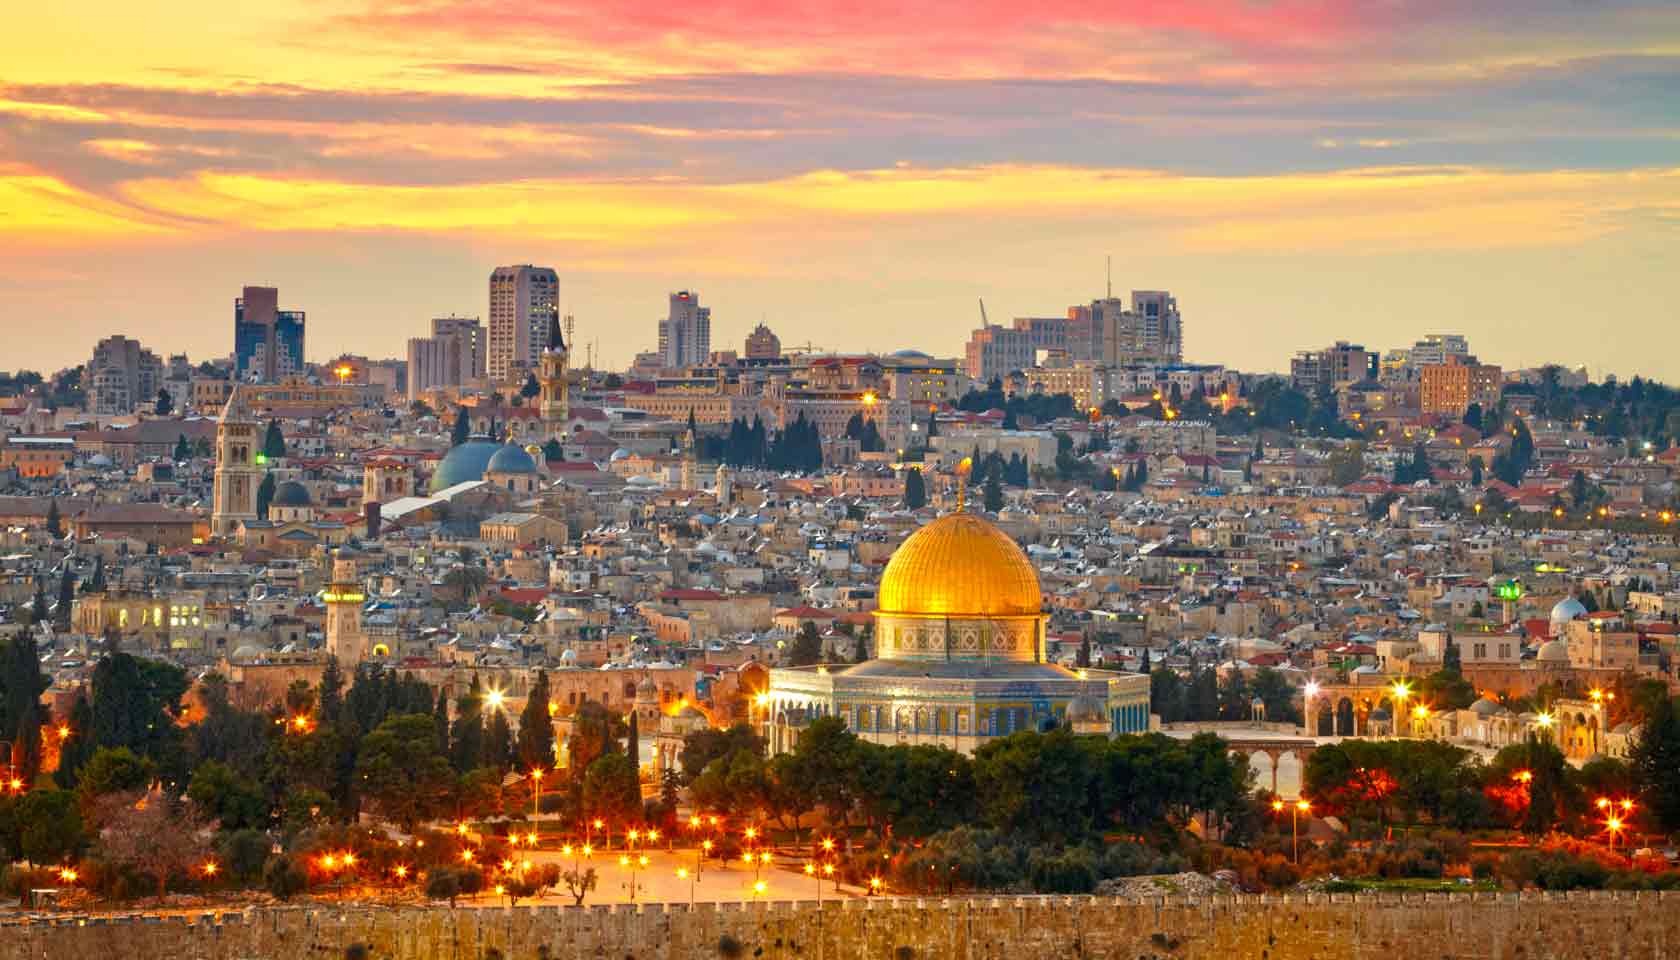 إلغاء فعاليات إضاءة شجرة الميلاد في القدس المحتلة